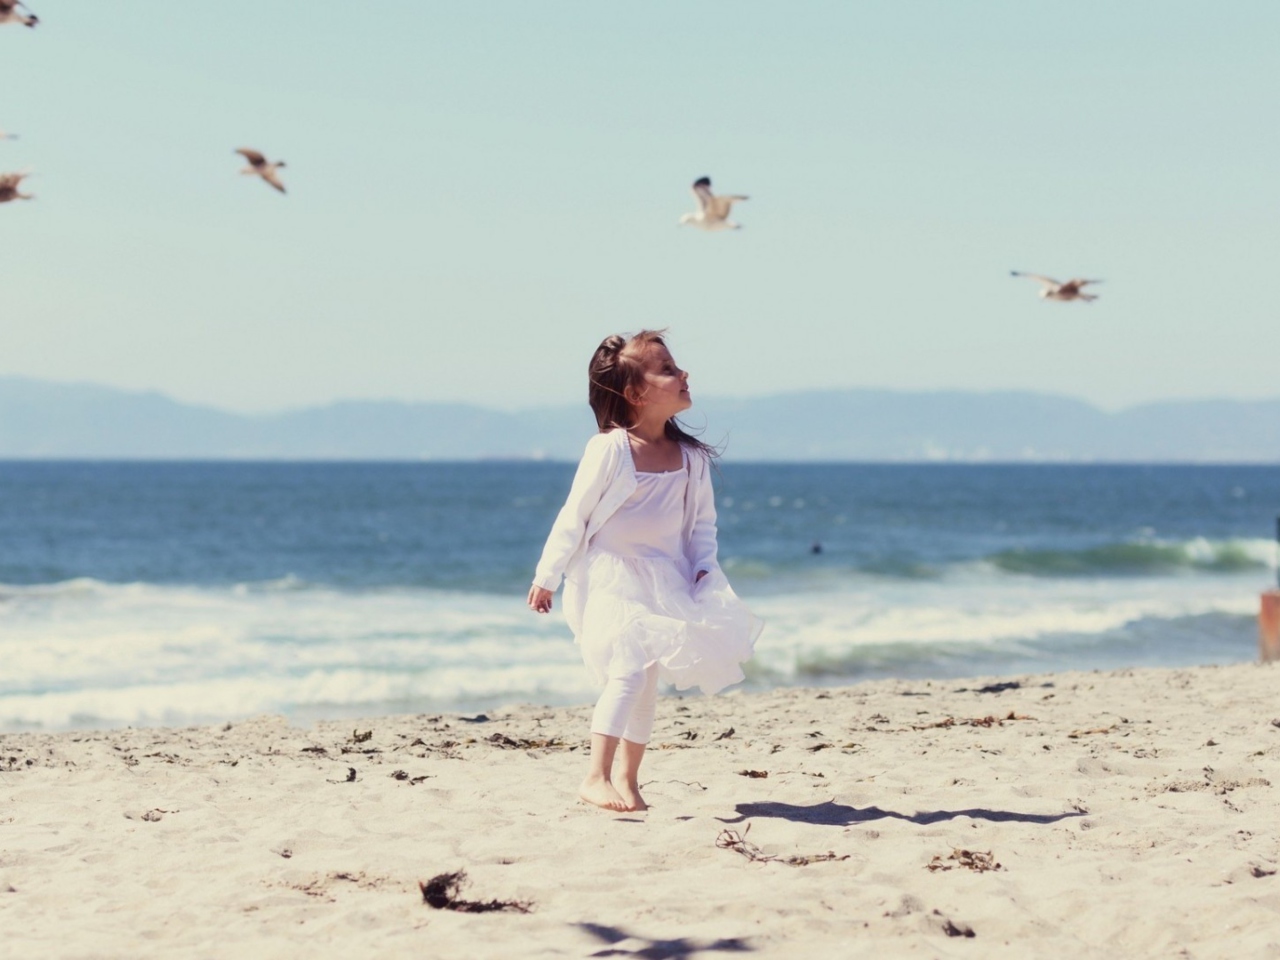 Little Girl And Seagulls On Beach wallpaper 1280x960